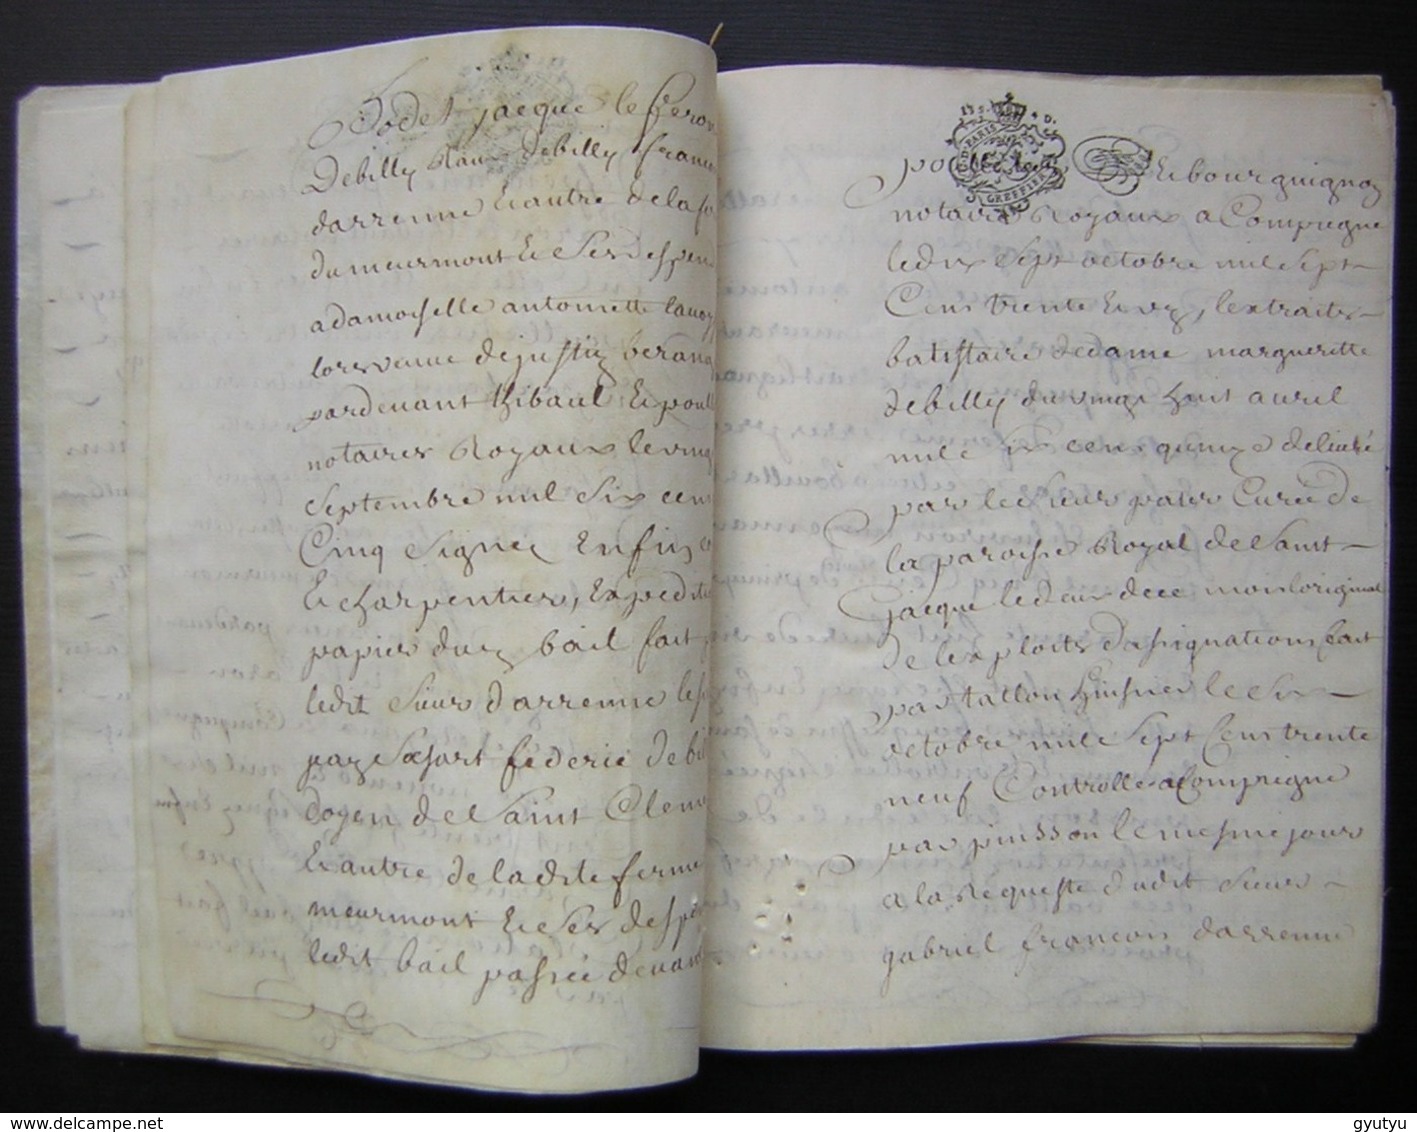 1740 parchemin 24 pages : Crépy annulation vente de De Billy  chanoine de Saint Clément Compiègne  à Antoine Saiget